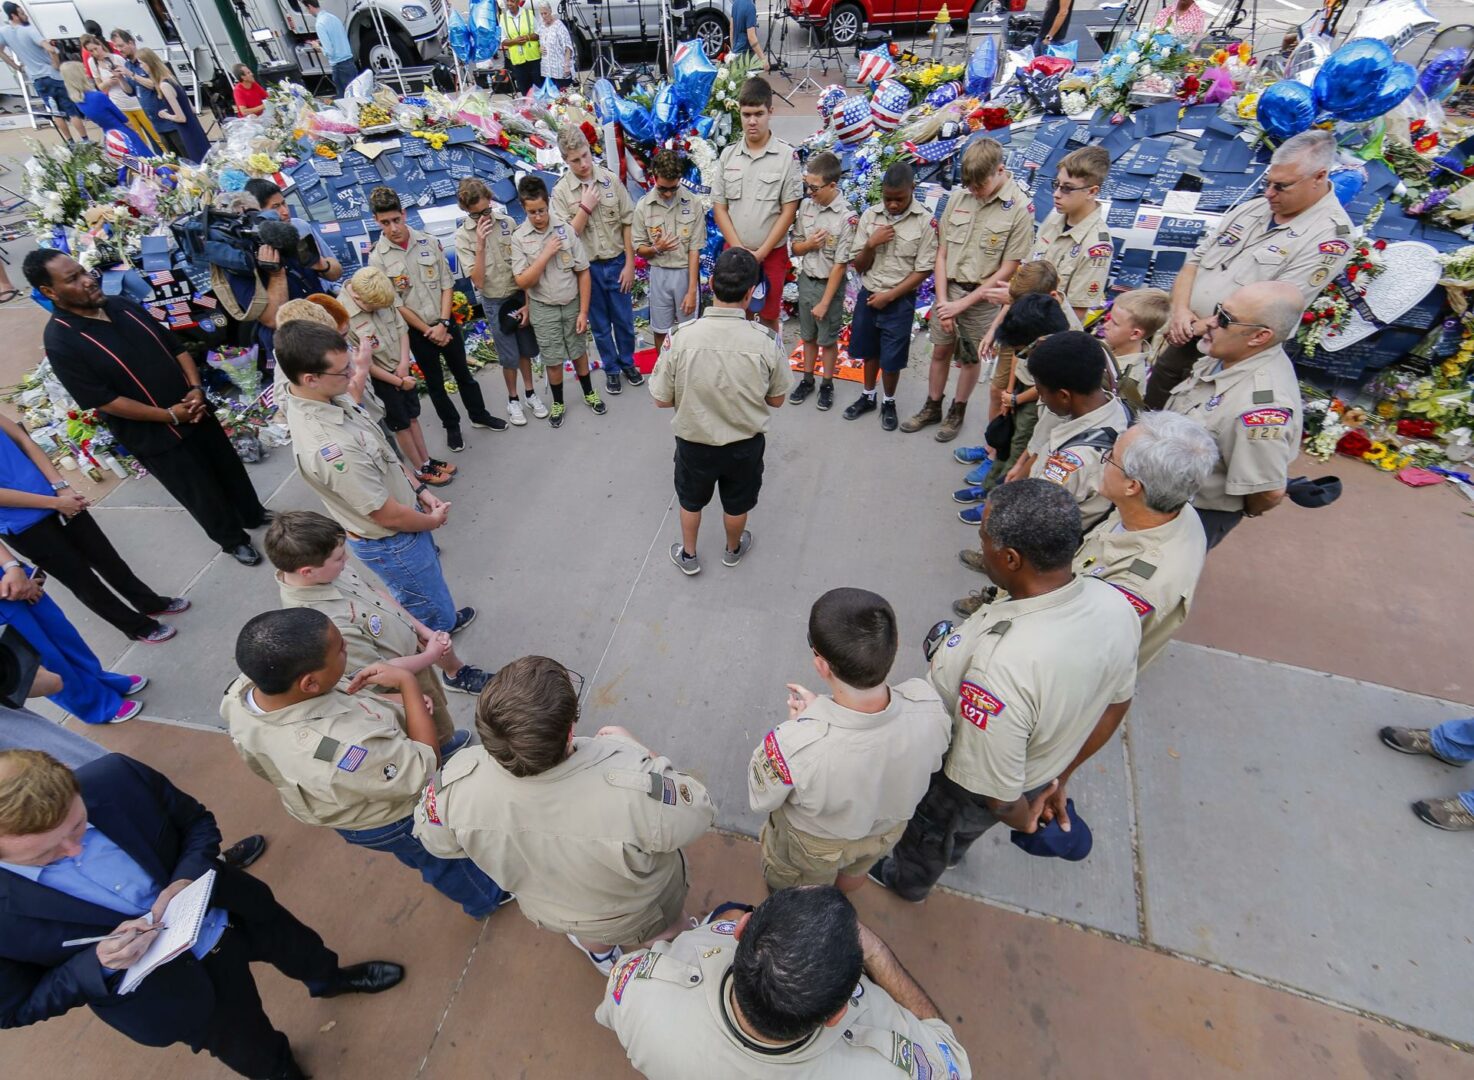 Los Boy Scouts de EE.UU. cambian su nombre tras años de denuncias de abuso